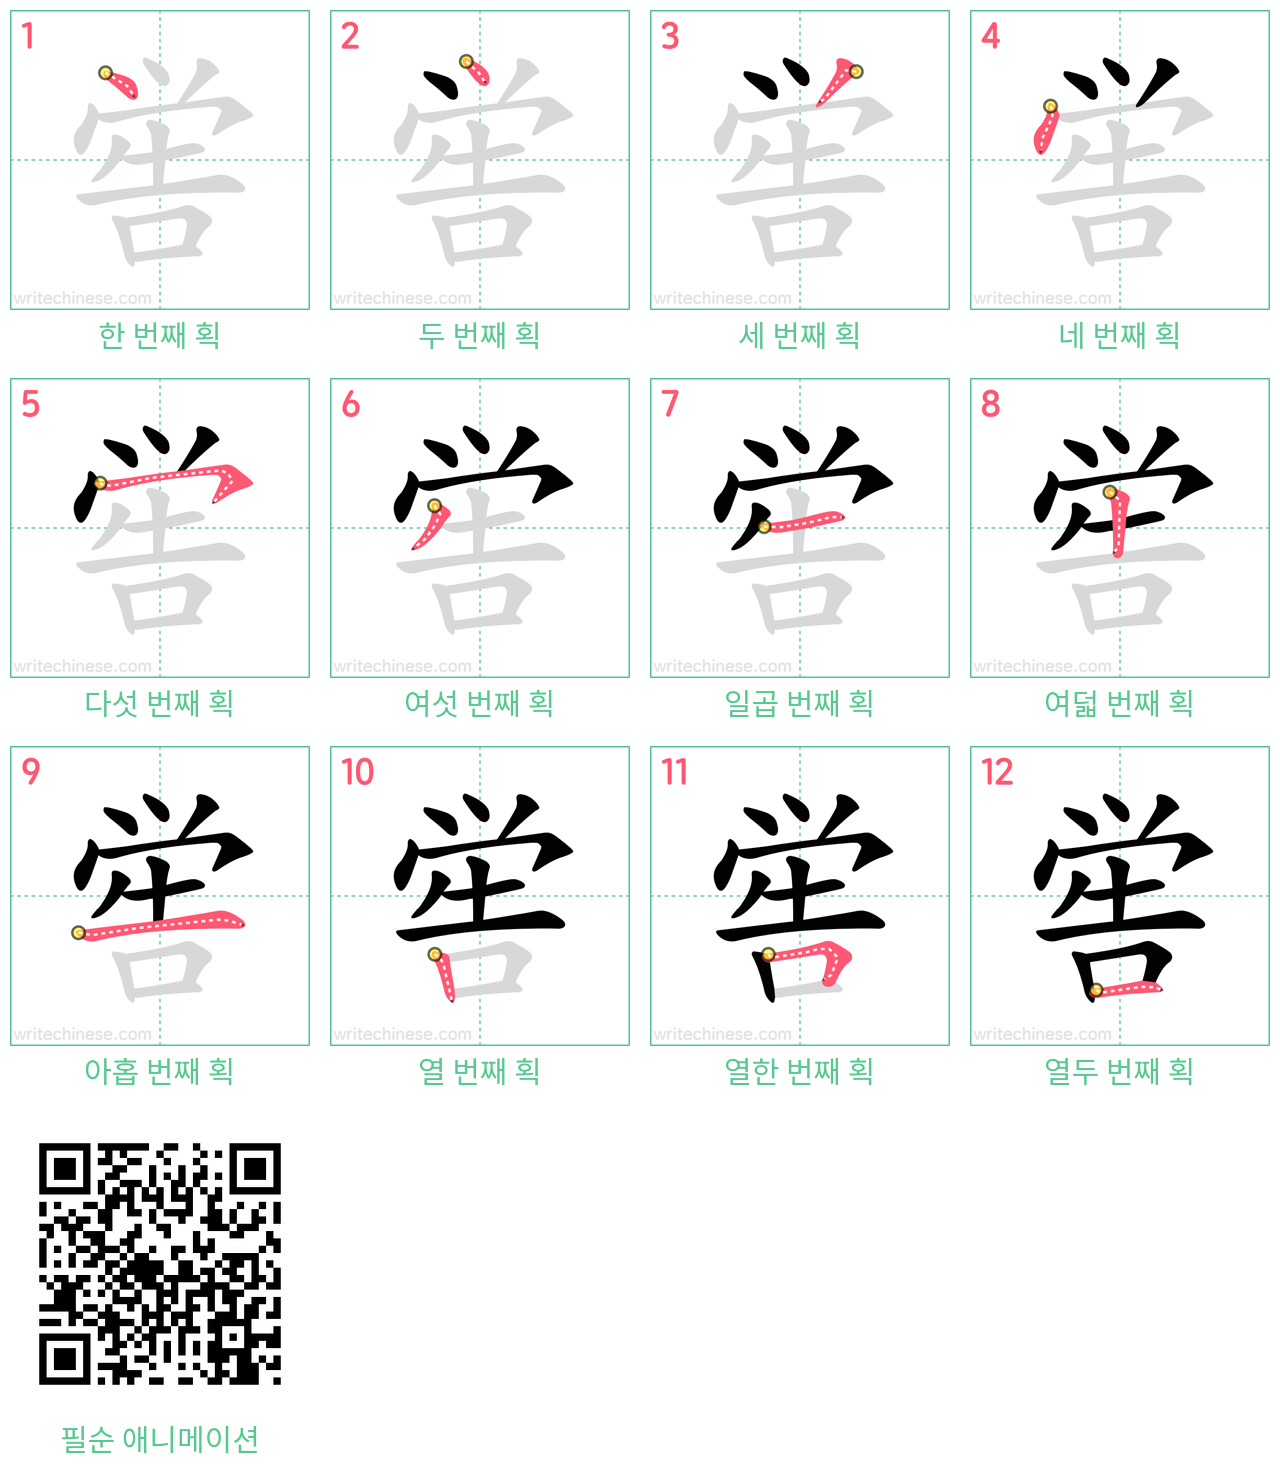 喾 step-by-step stroke order diagrams